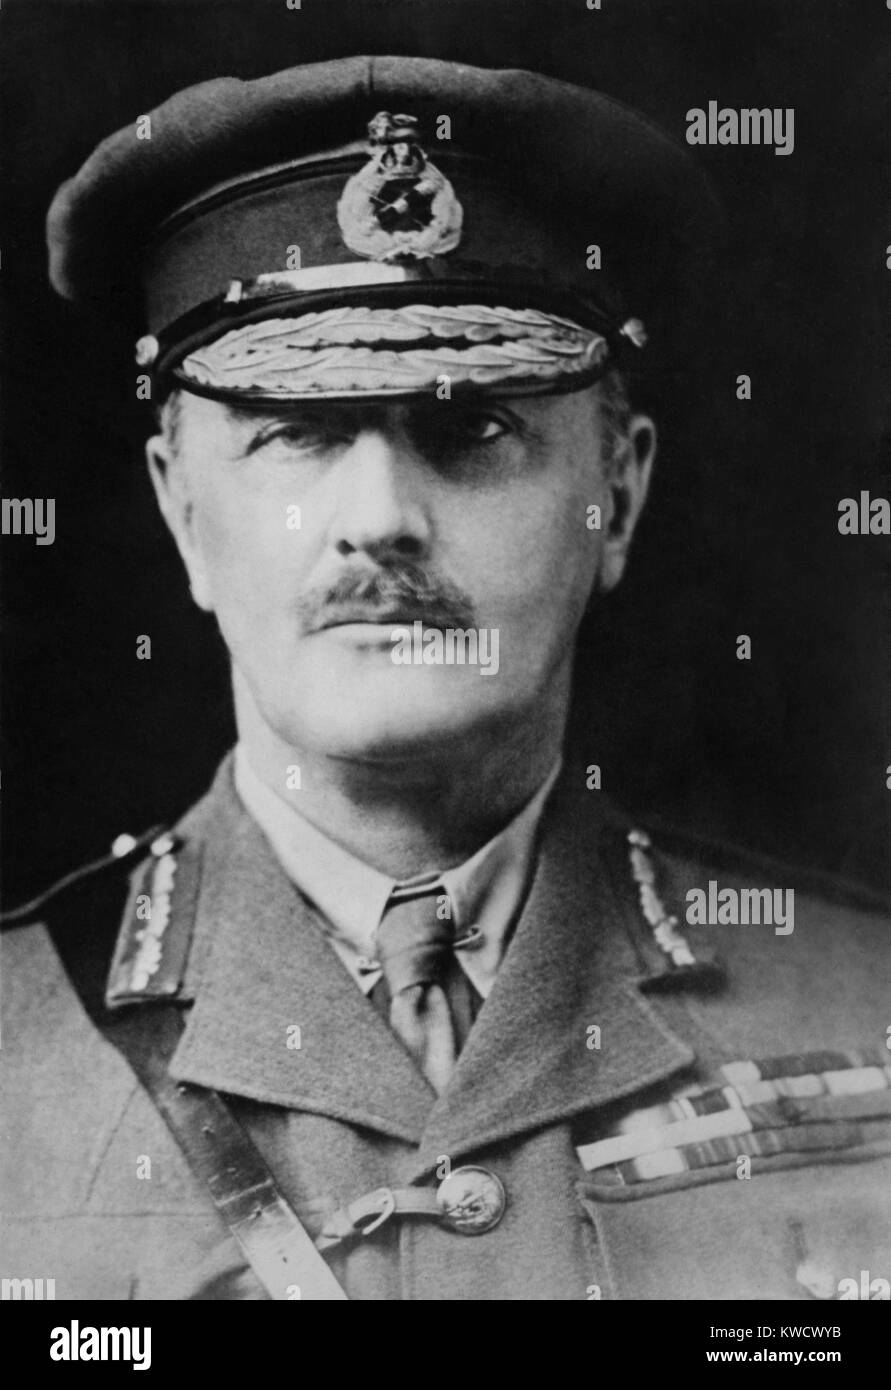 Général Edmund Allenby a dirigé le Sinaï et la Palestine Empires britannique campagne dans la PREMIÈRE GUERRE MONDIALE. L'Empire Ottoman se sont battus contre la Force expéditionnaire égyptienne et la Légion arabe depuis plus de deux ans entre 1915-1918 (BSLOC 2017 1 6) Banque D'Images